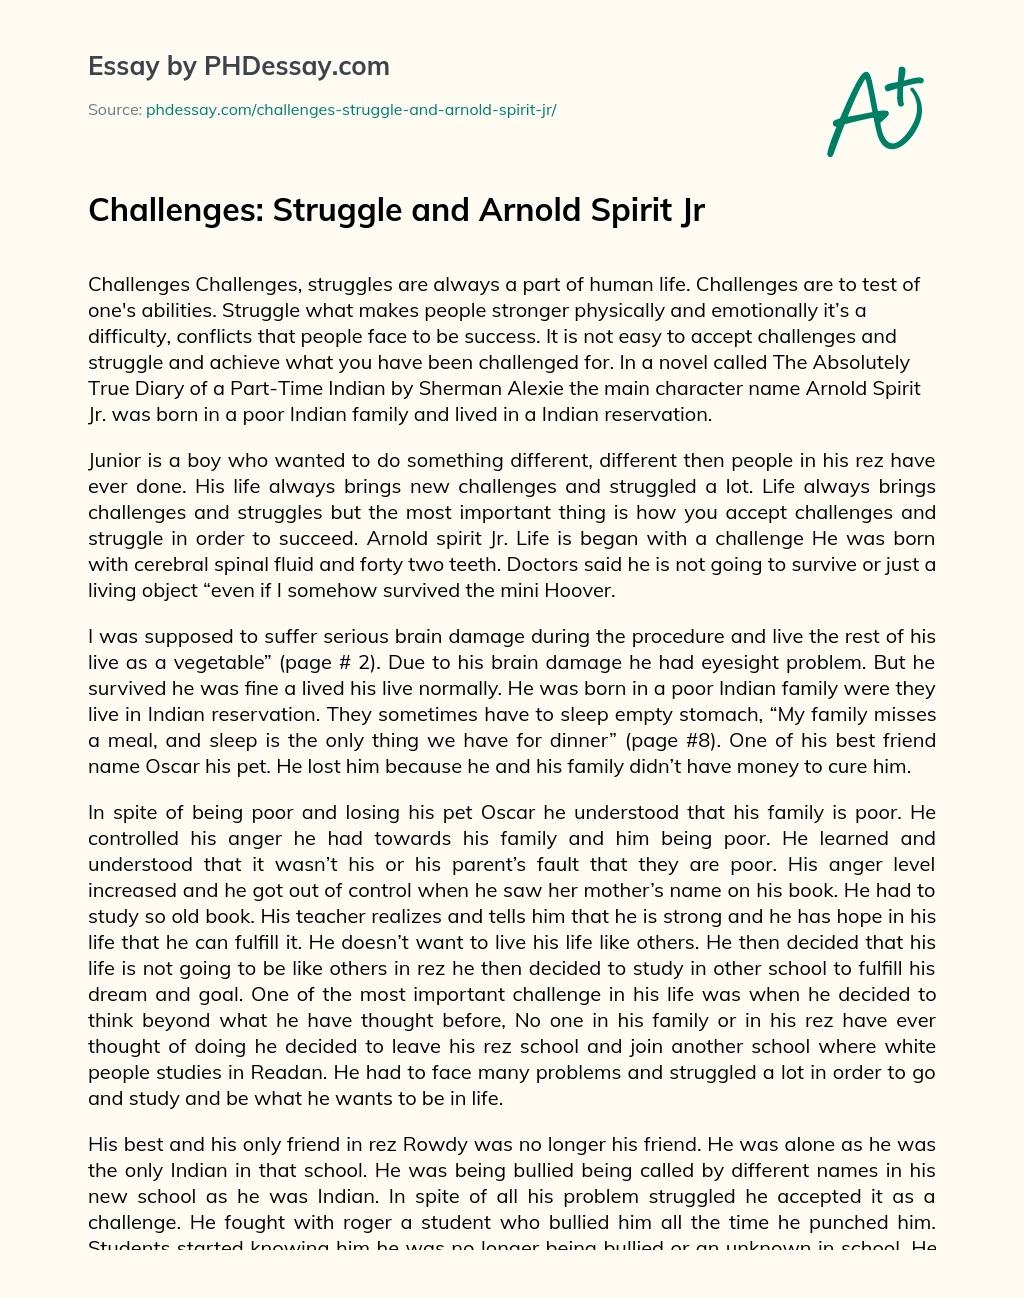 Challenges: Struggle and Arnold Spirit Jr essay